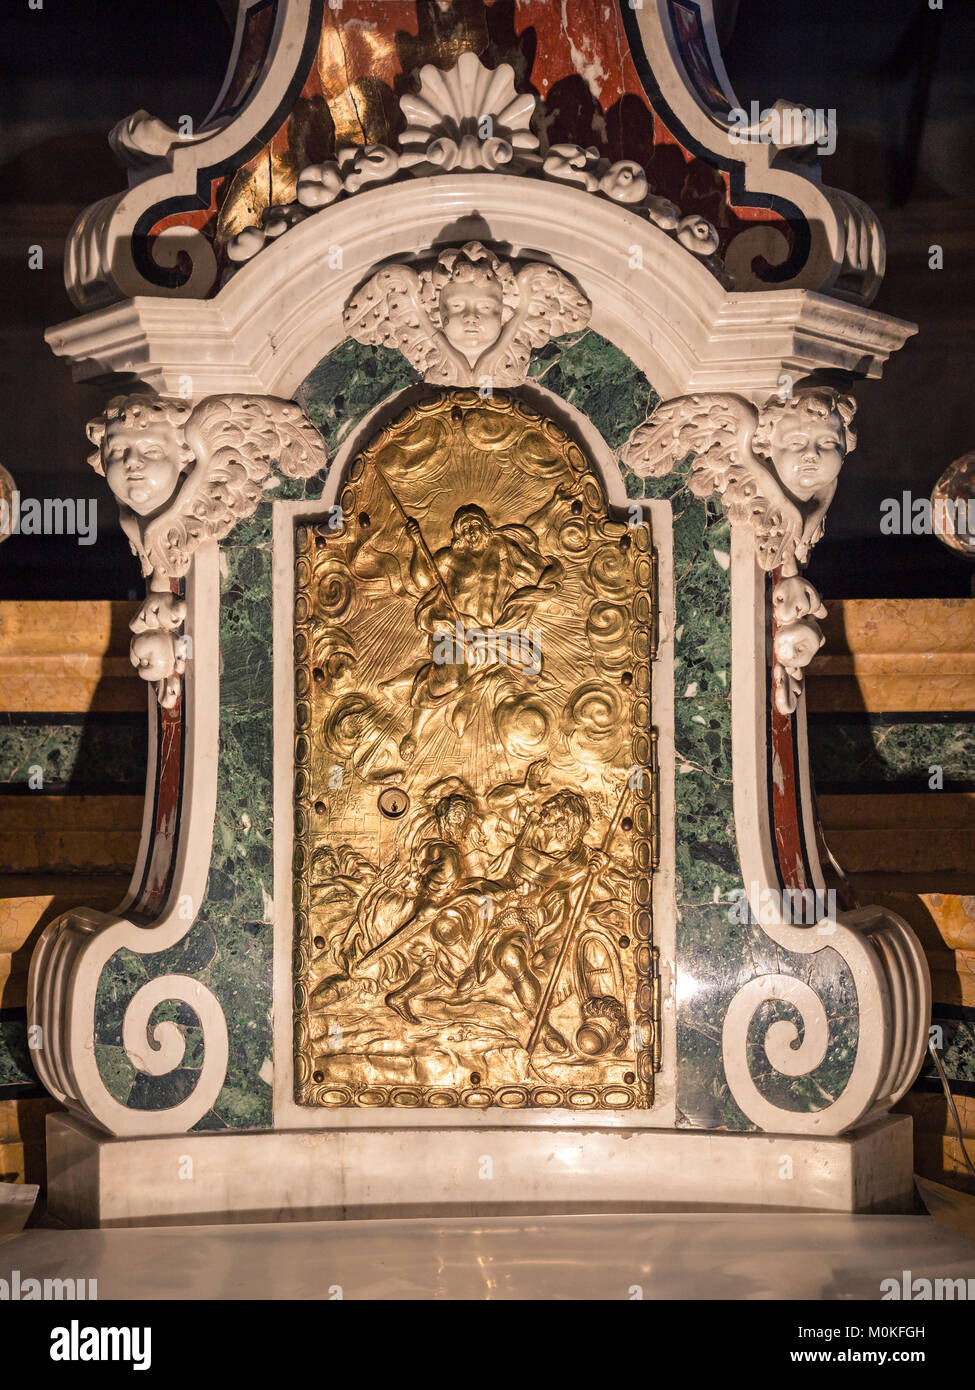 Dettaglio di un tabernacolo in una chiesa cattolica nella quale sono  conservate le ostie consacrate dopo la celebrazione eucaristica Foto stock  - Alamy